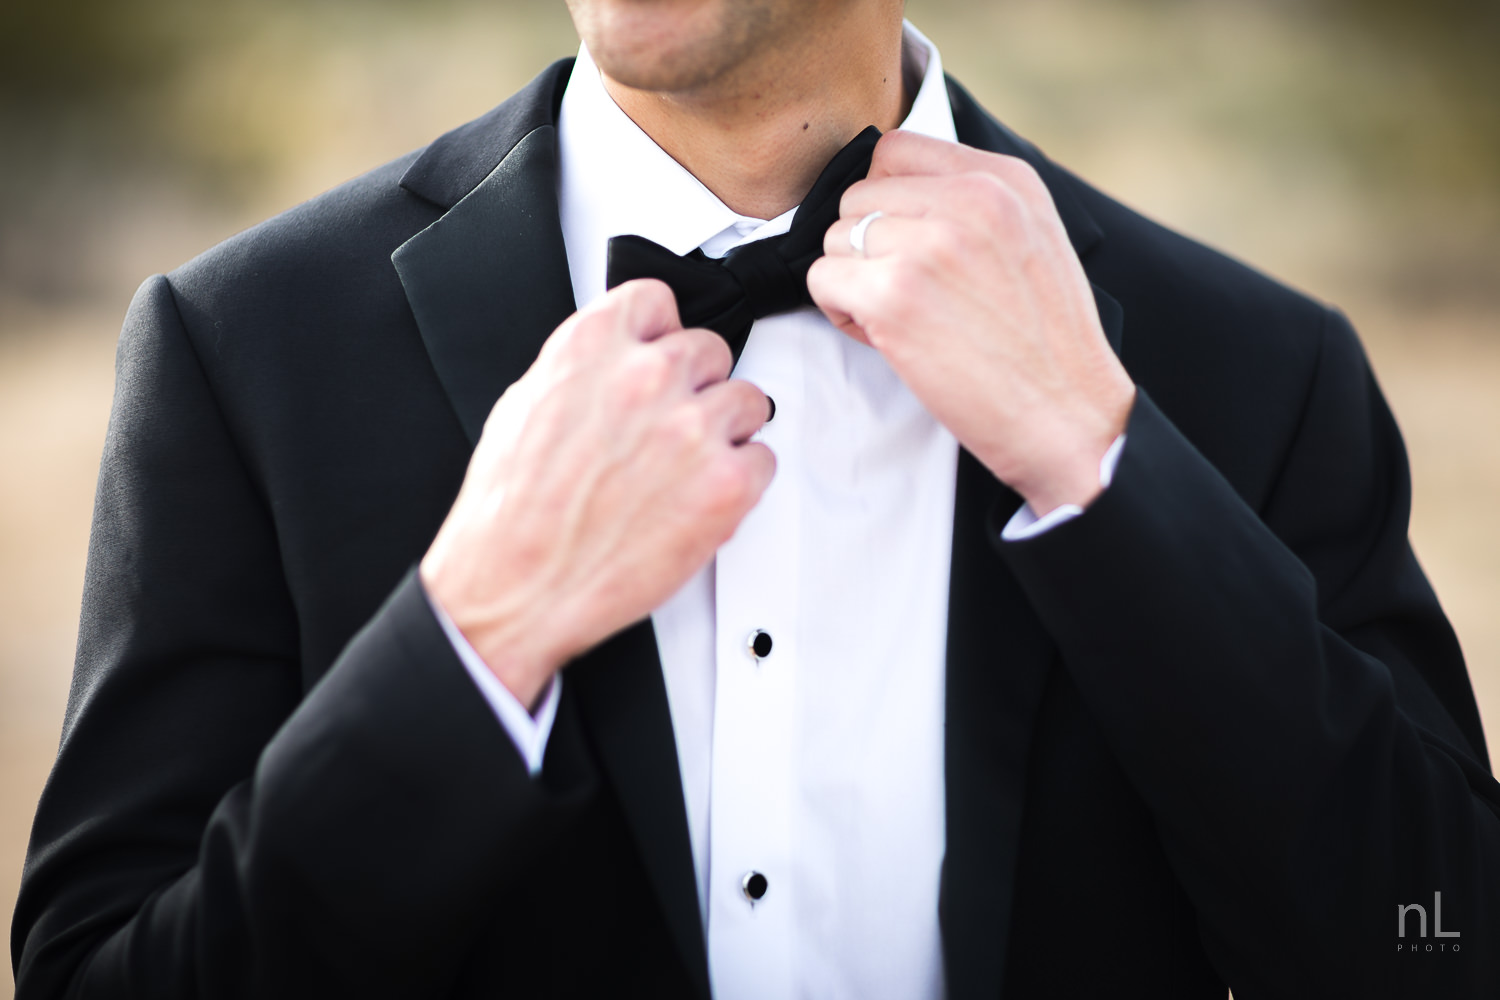 joshua-tree-engagement-wedding-elopement-photography-stylized-photoshoot-groom-adjusting-bow-tie-tuxedo